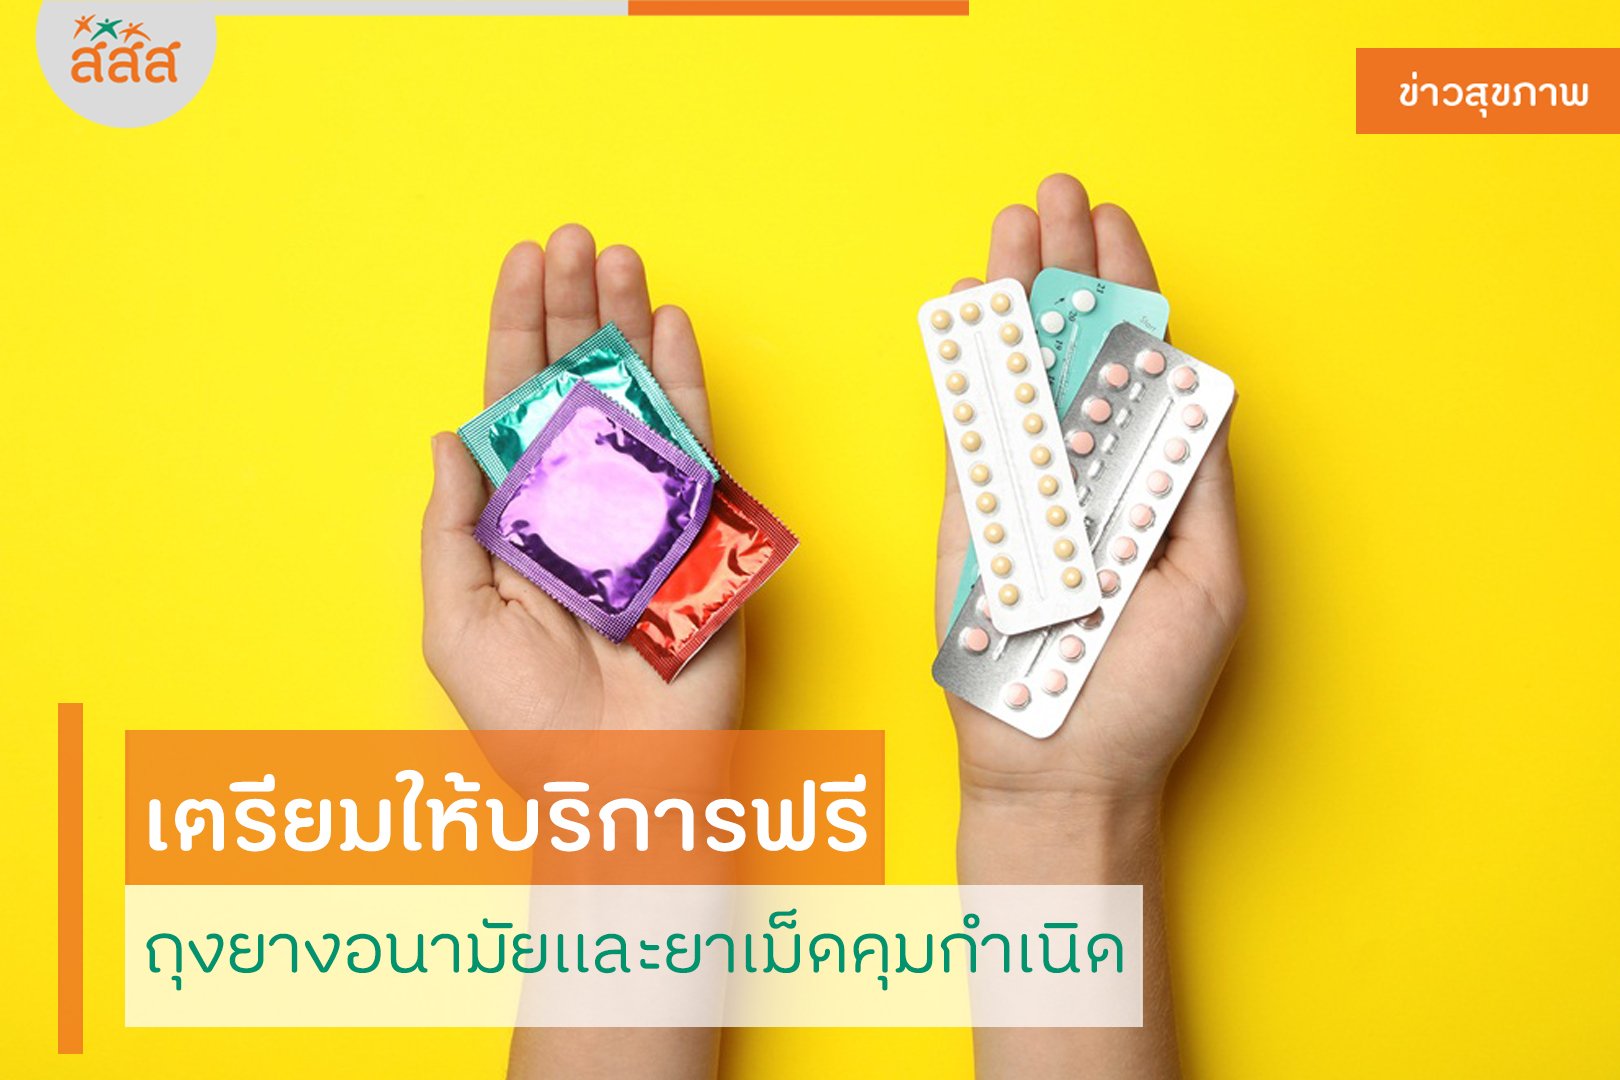 เตรียมให้บริการฟรี ถุงยางอนามัยและยาเม็ดคุมกำเนิด thaihealth